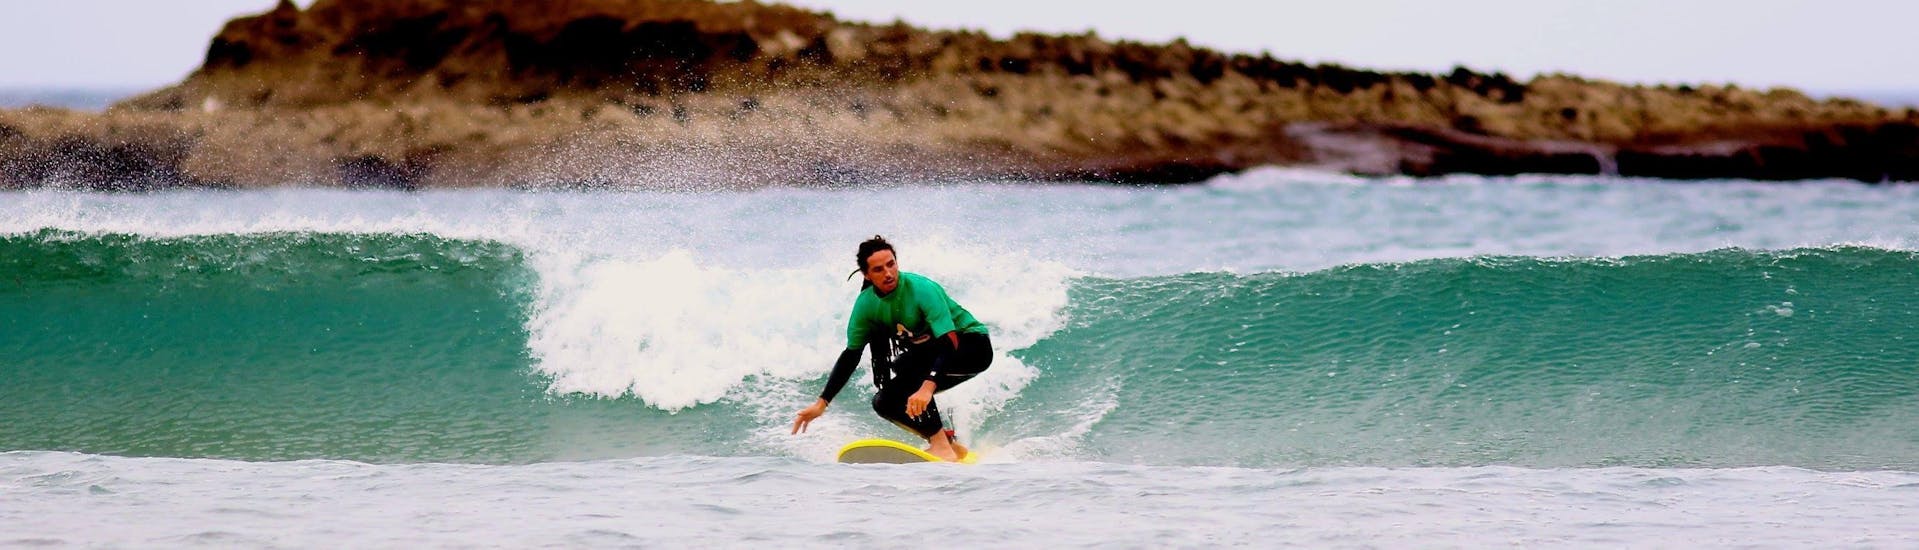 Lezioni di surf a Carrapateira da 6 anni per surfisti avanzati.